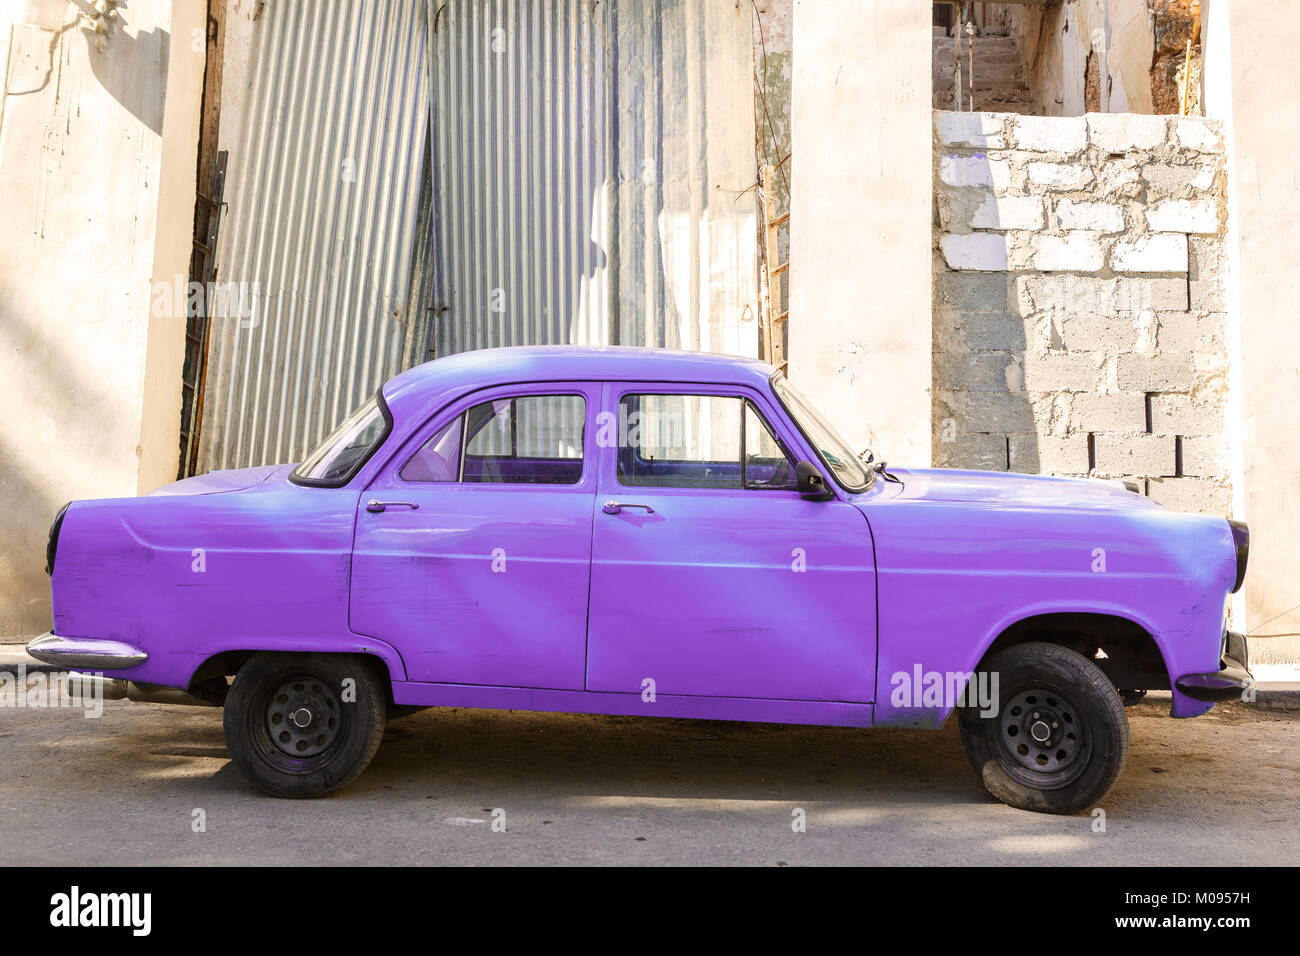 Pourpre ancienne voiture garée dans une rue de Cuba Banque D'Images